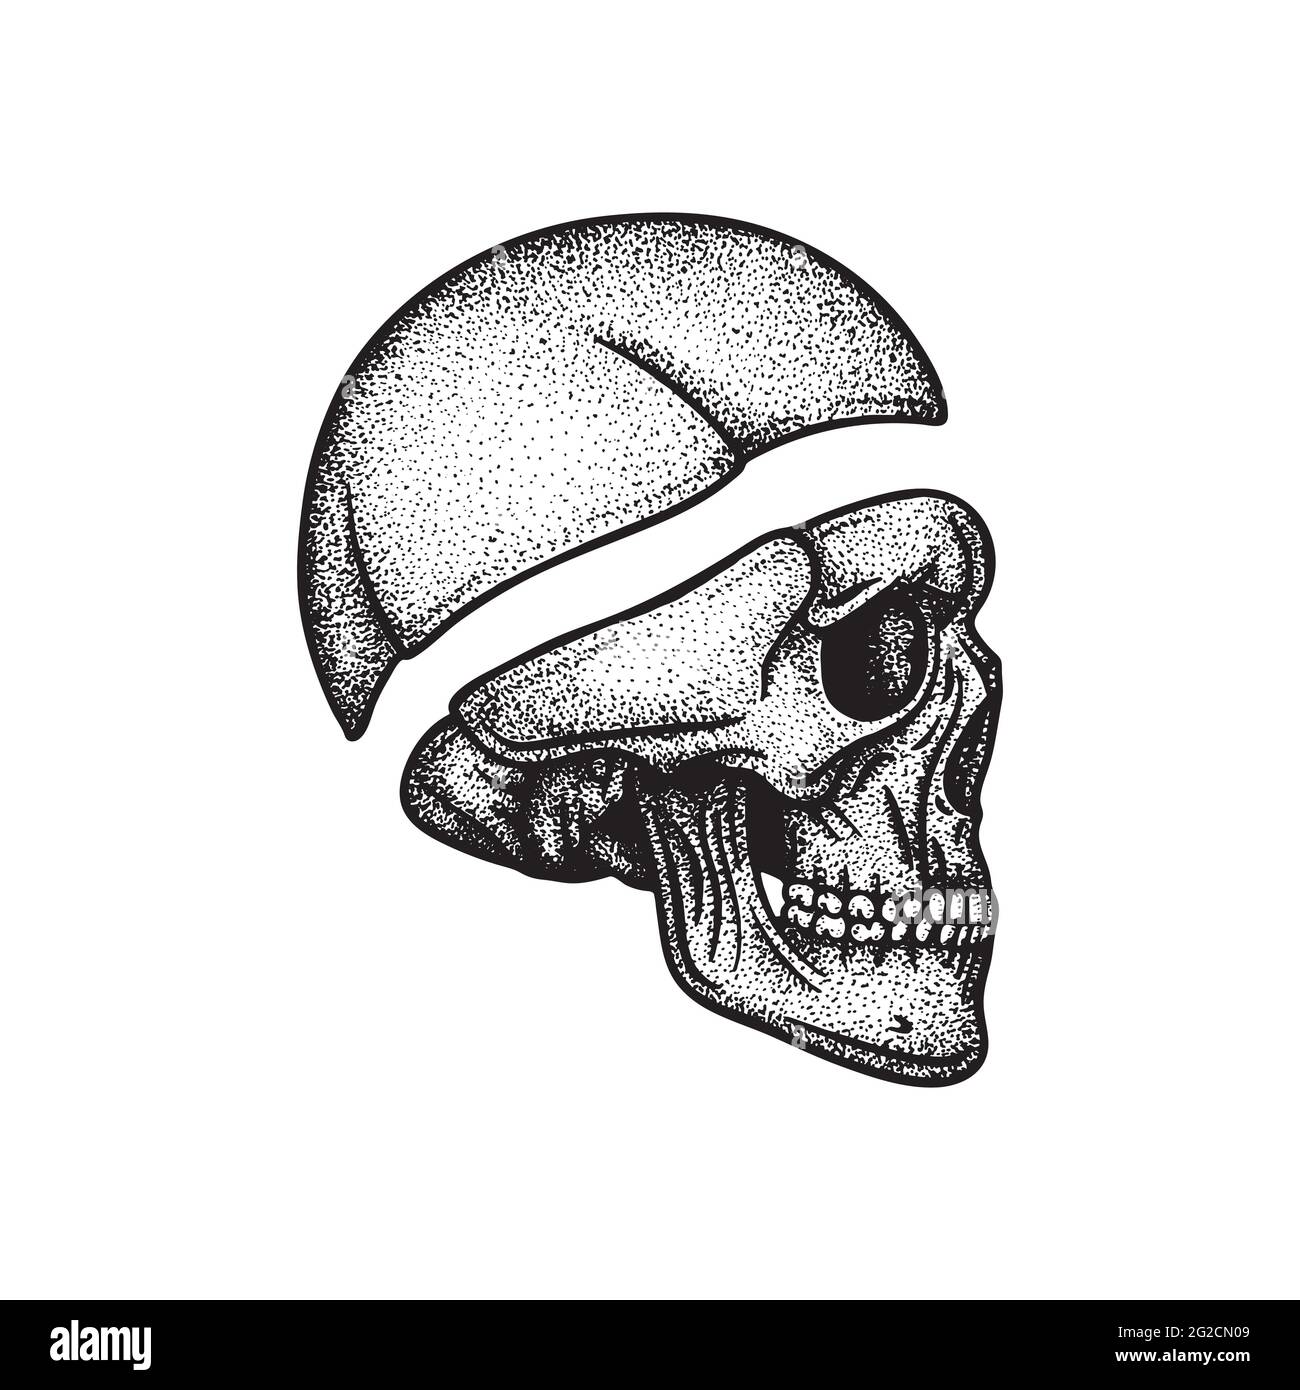 Illustration vectorielle dessinée à la main dans la vue latérale du crâne humain. Fait partie du graphique squelette humain. Illustration de Vecteur